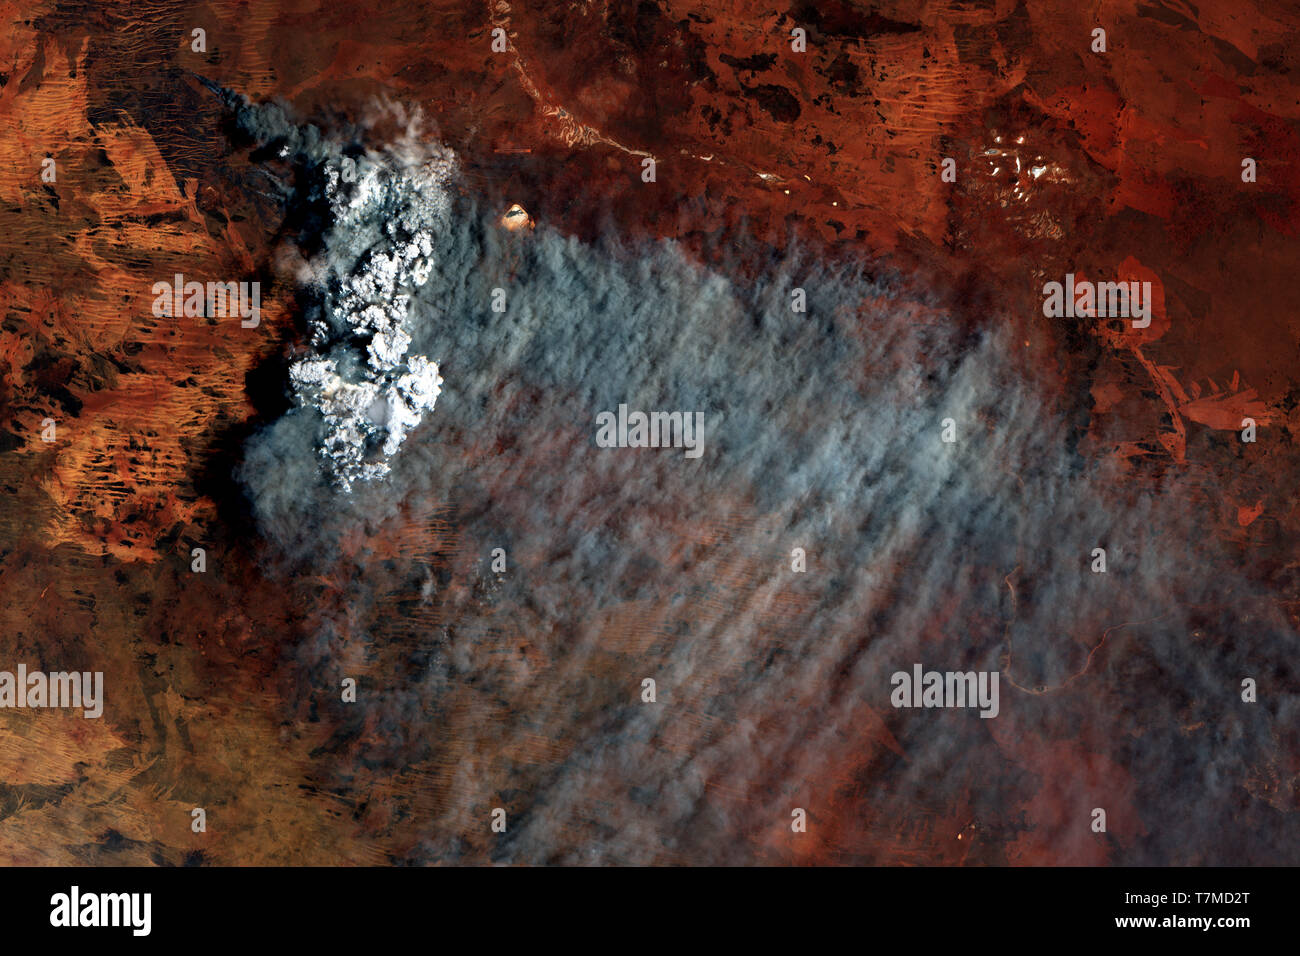 Les feux de brousse dans la partie occidentale du désert australien vu de l'espace en janvier 2019 - contient des données Sentinel Copernicus modifiés (2019) Banque D'Images